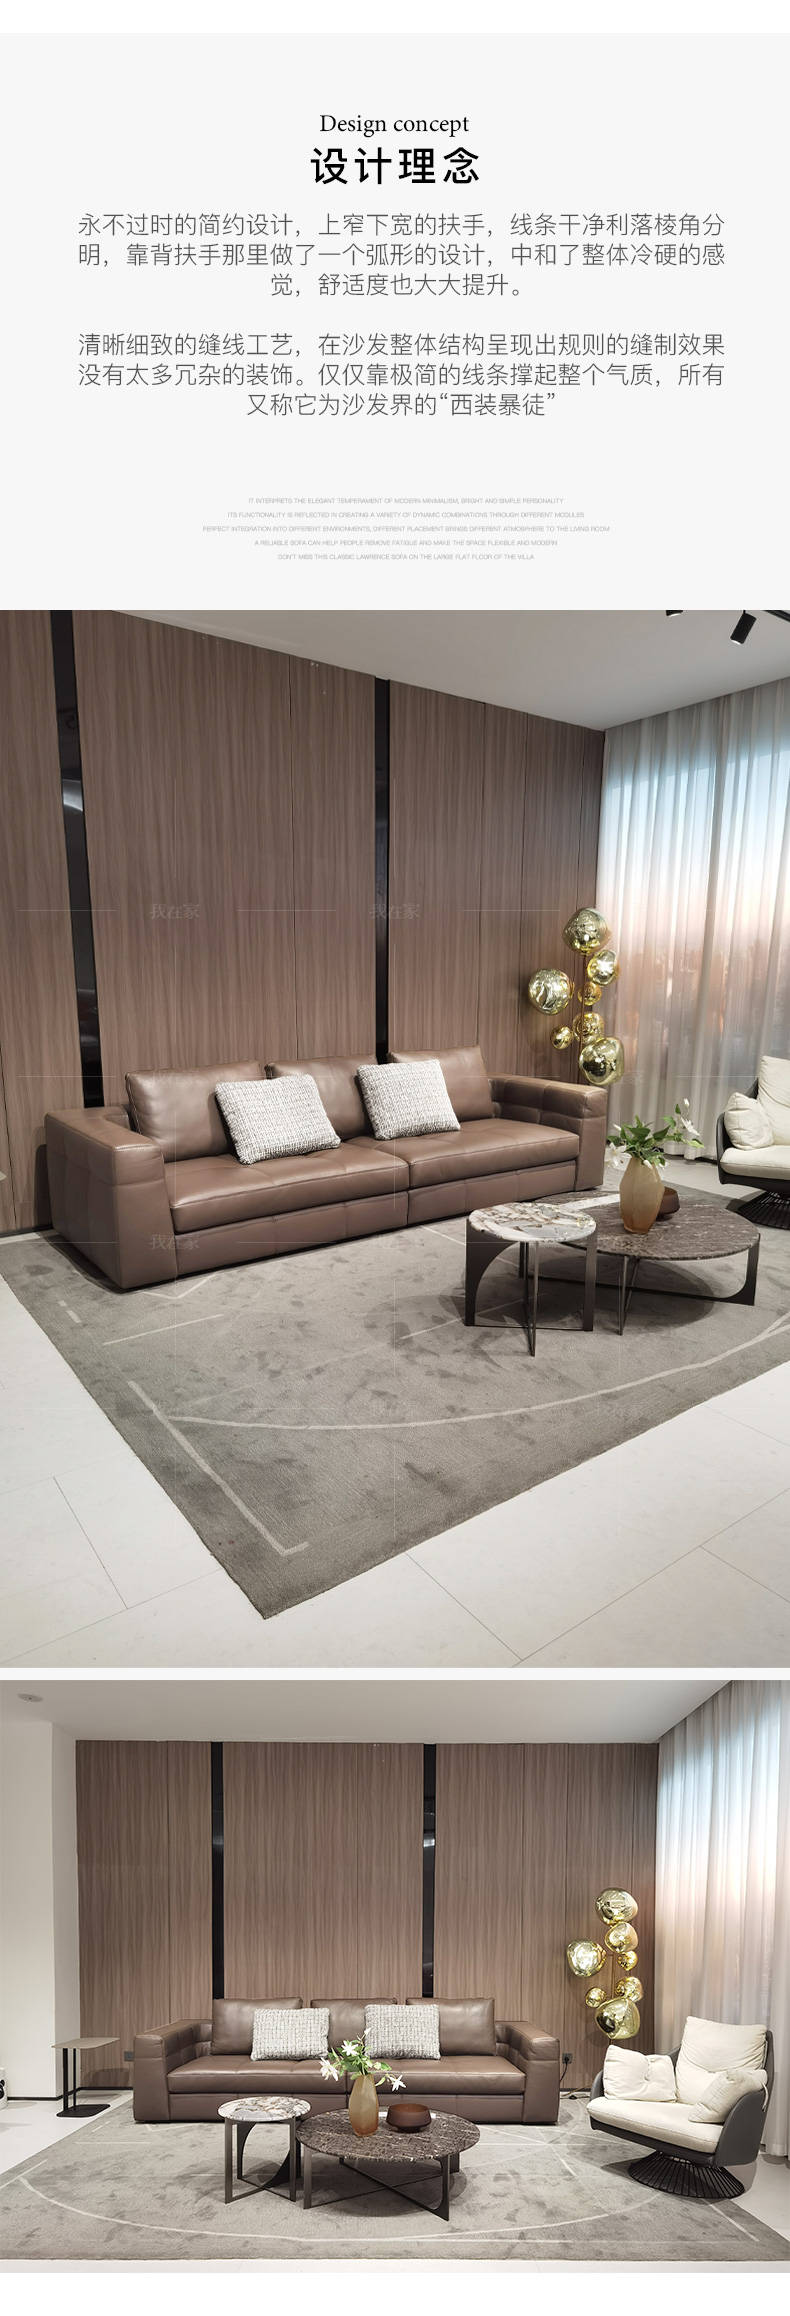 意式极简风格Blazer布雷泽沙发的家具详细介绍